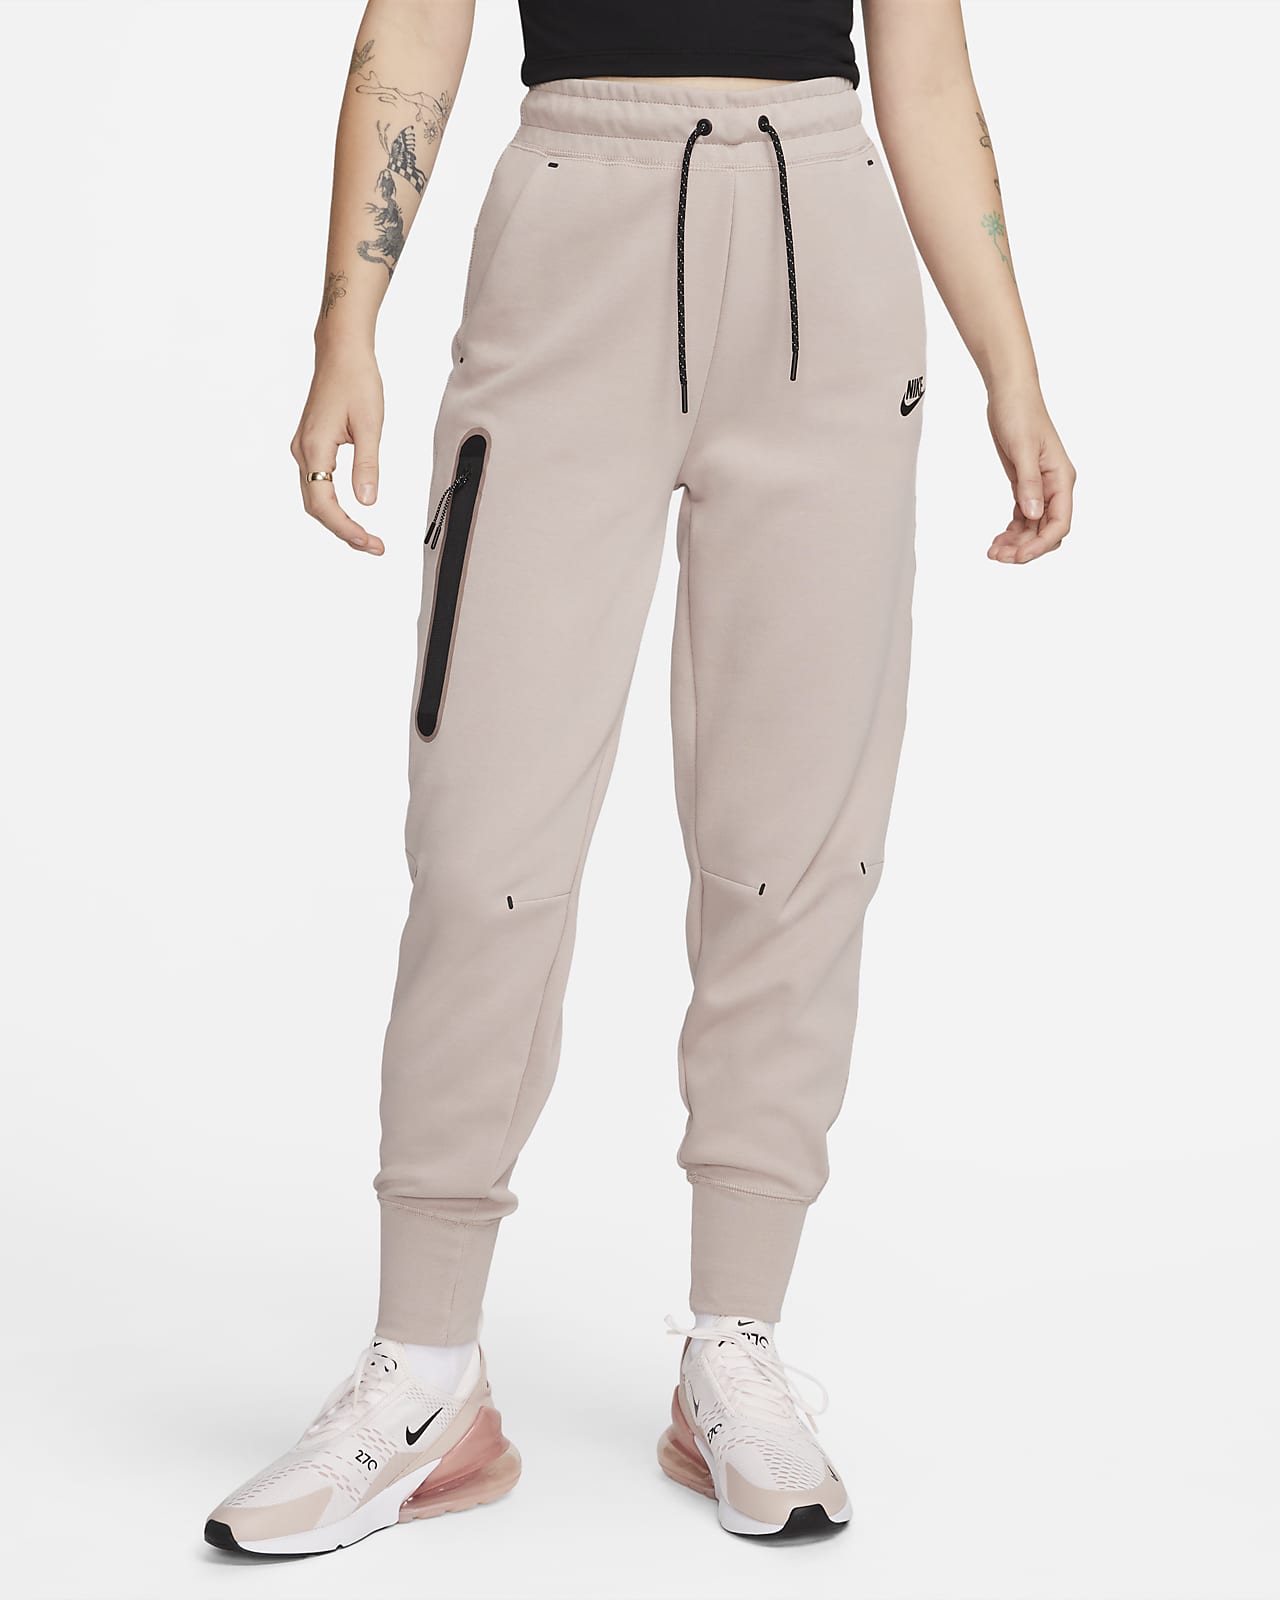 Pantalones para mujer Nike Tech Fleece. Nike.com